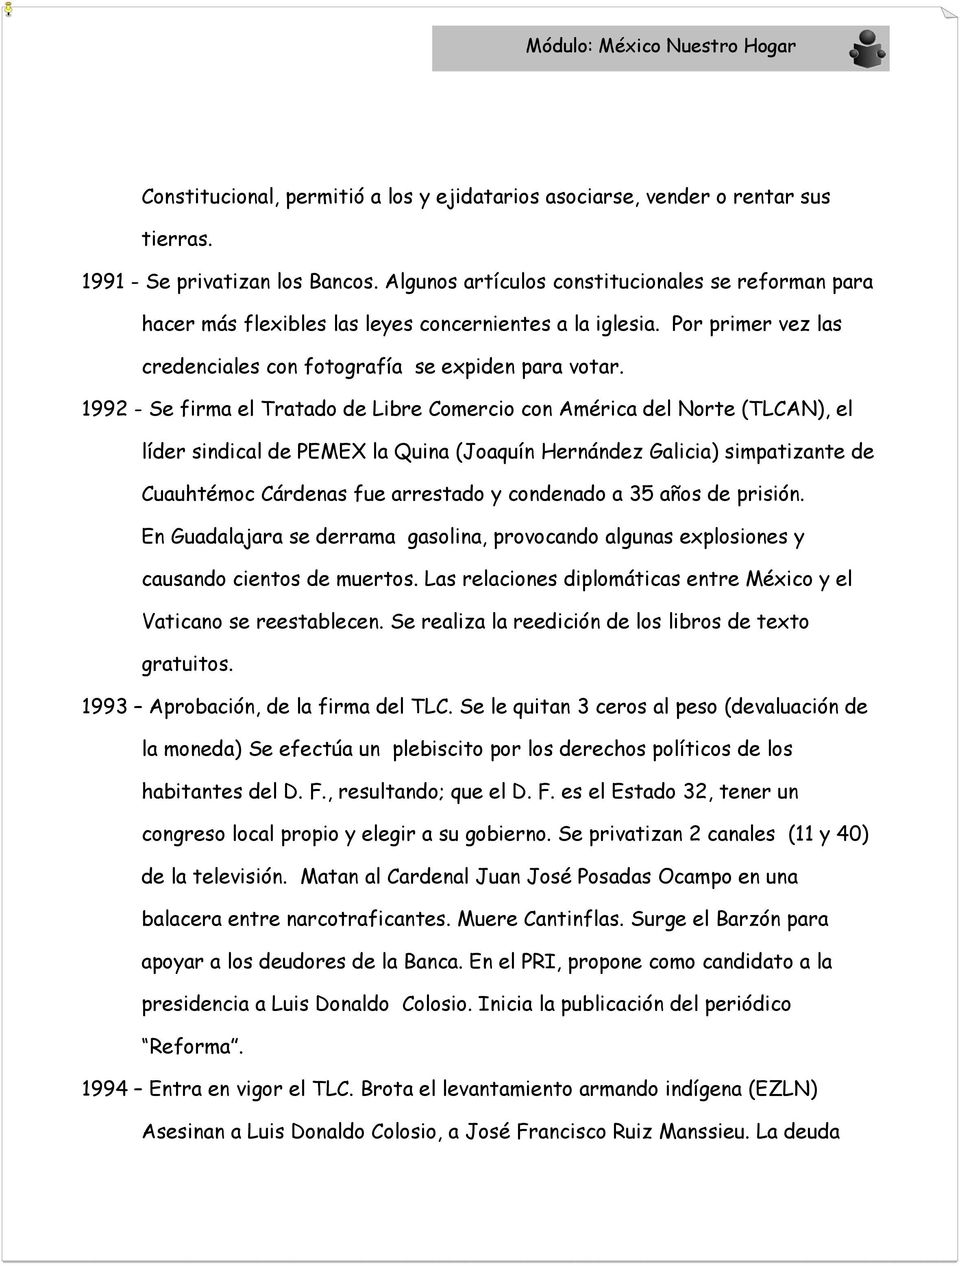 1992 - Se firma el Tratado de Libre Comercio con América del Norte (TLCAN), el líder sindical de PEMEX la Quina (Joaquín Hernández Galicia) simpatizante de Cuauhtémoc Cárdenas fue arrestado y